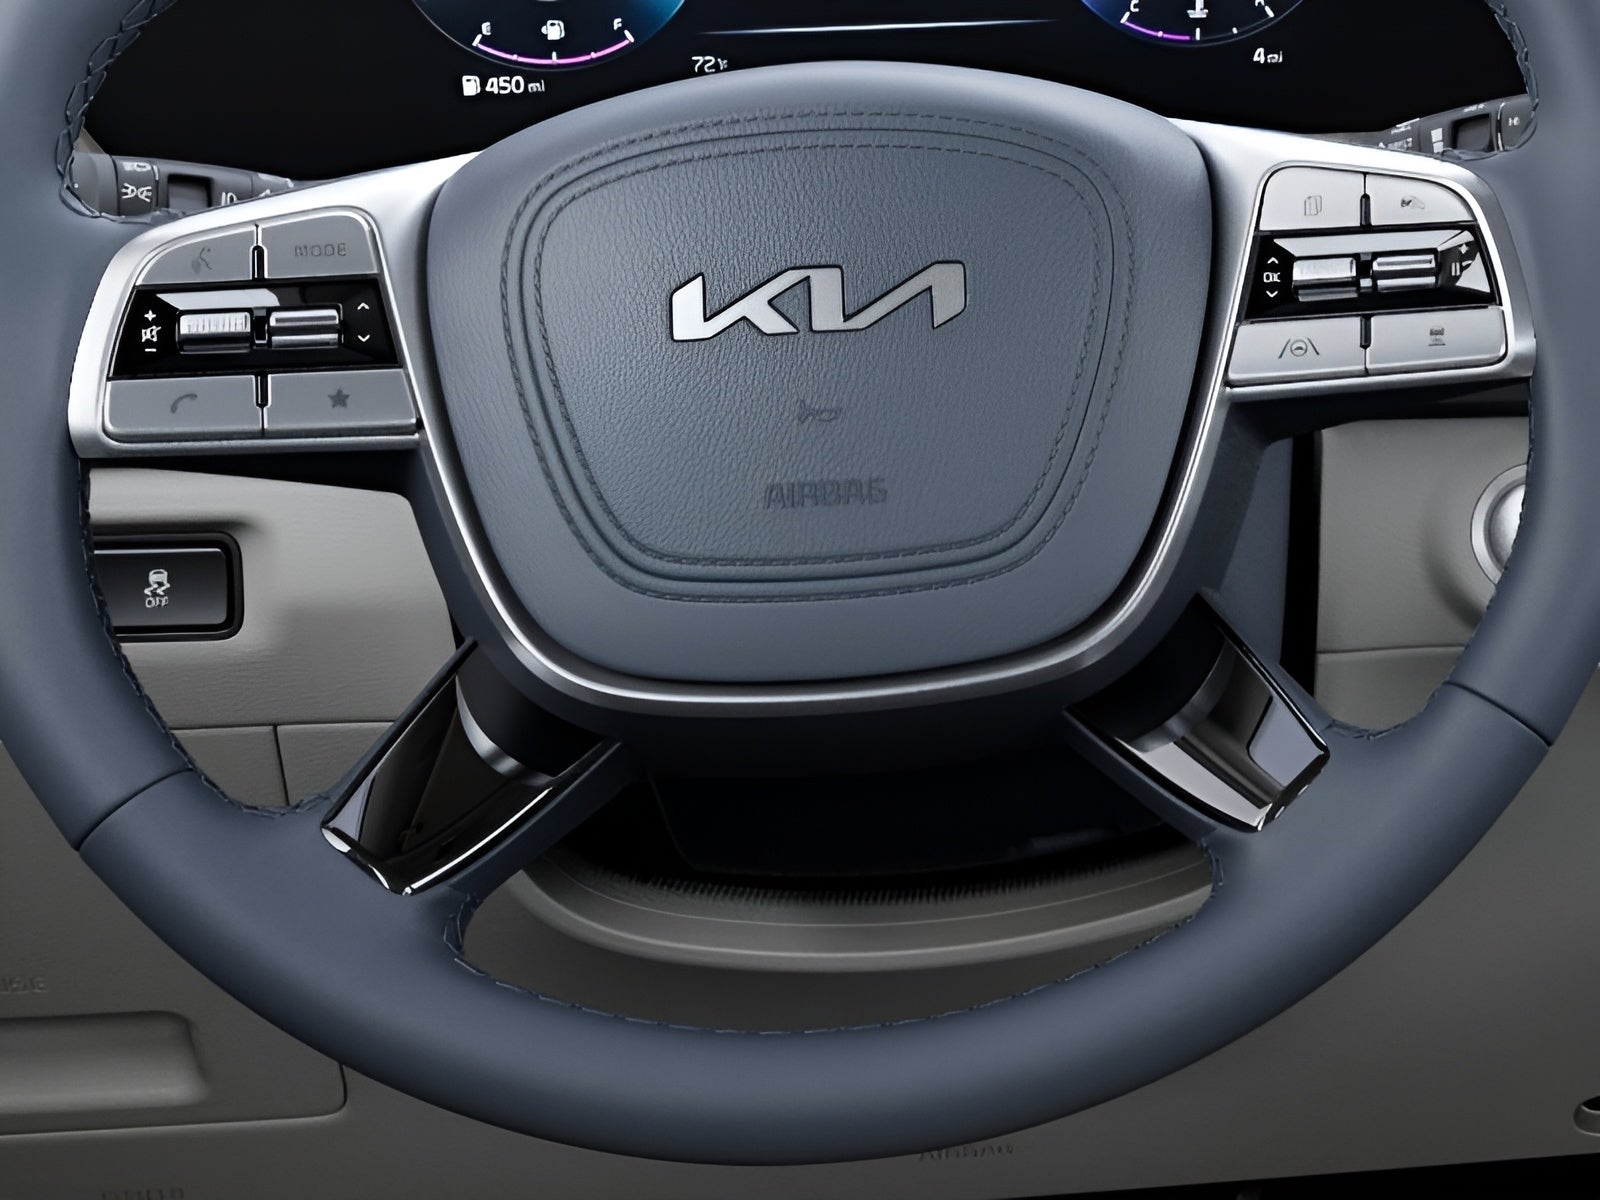 2024 Kia Telluride SX AWD